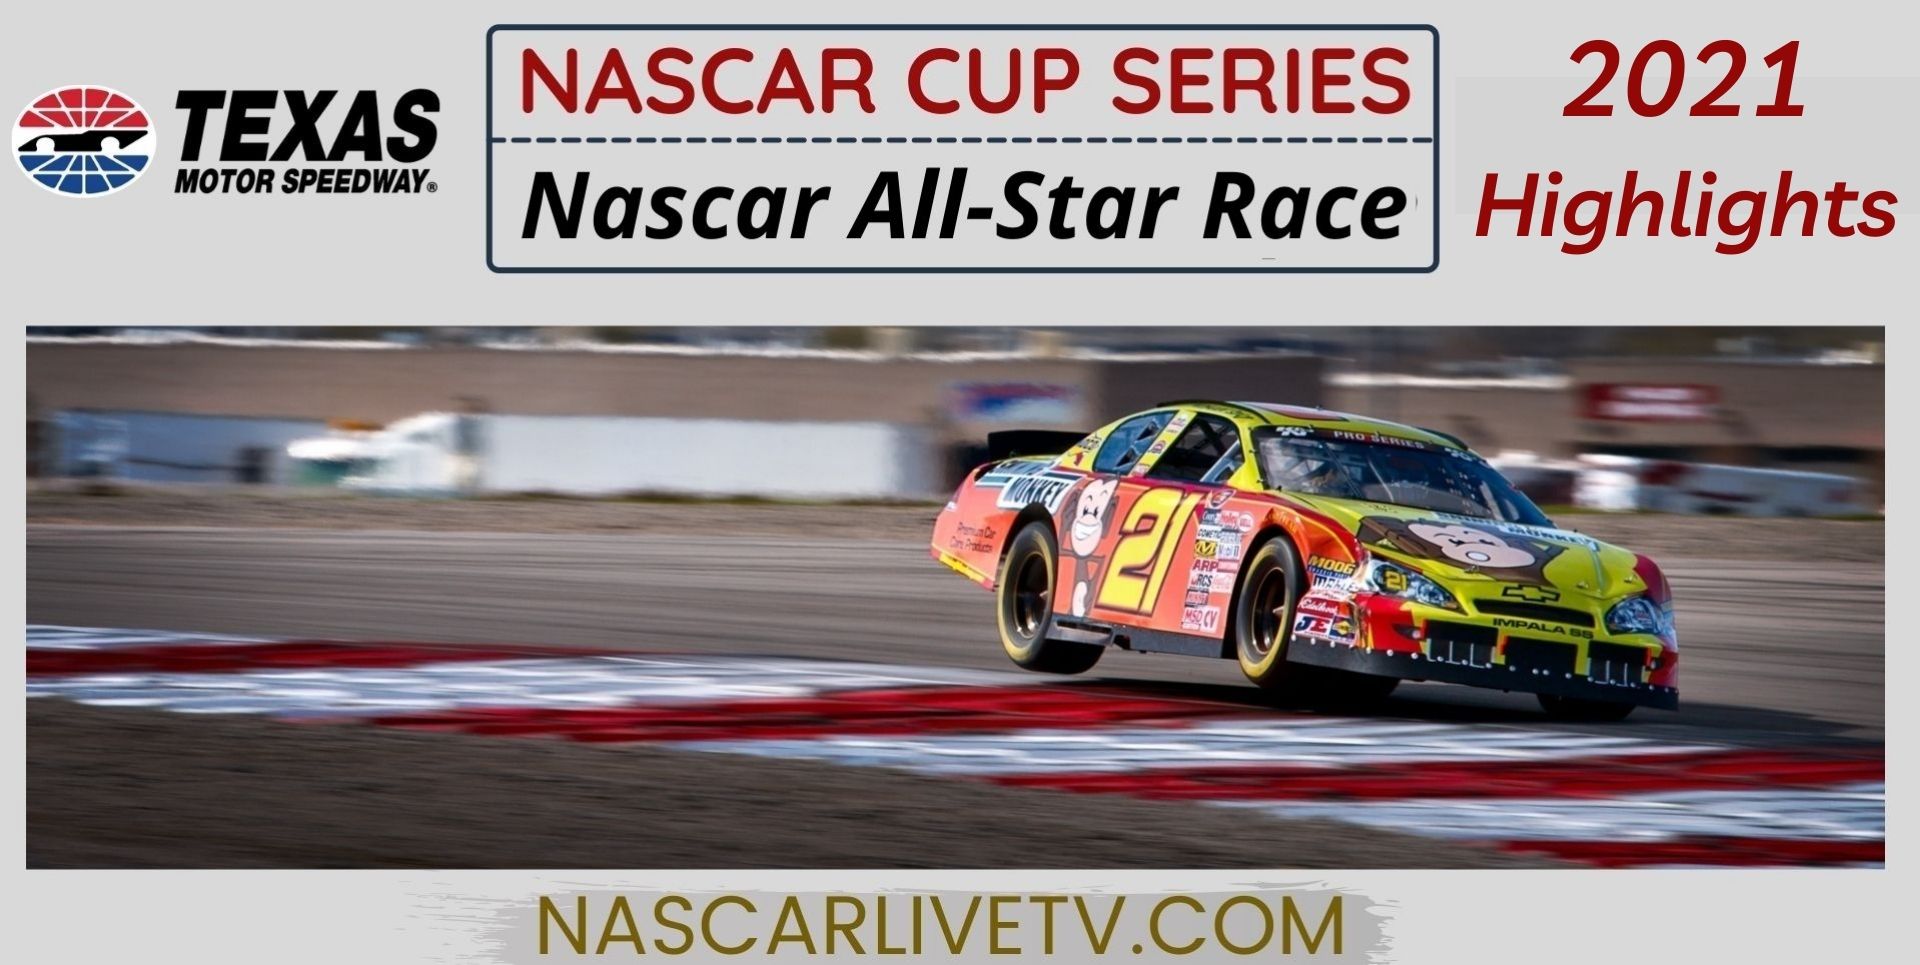 All Star Race Highlights NASCAR Cup Series 2021